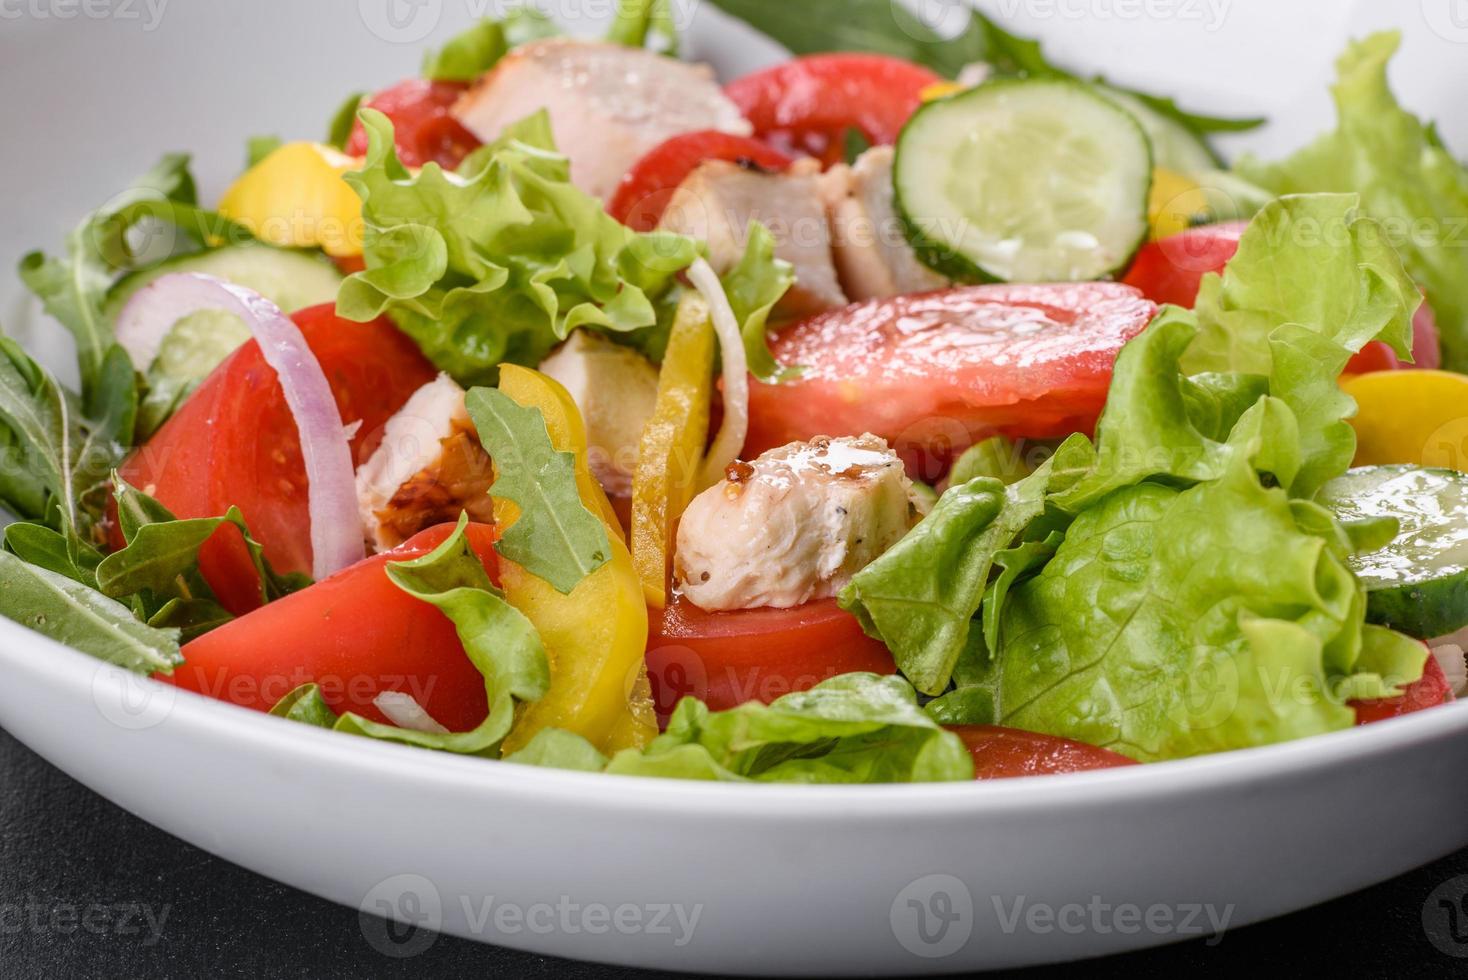 délicieuse salade fraîche avec poulet, tomate, concombre, oignons et légumes verts à l'huile d'olive photo